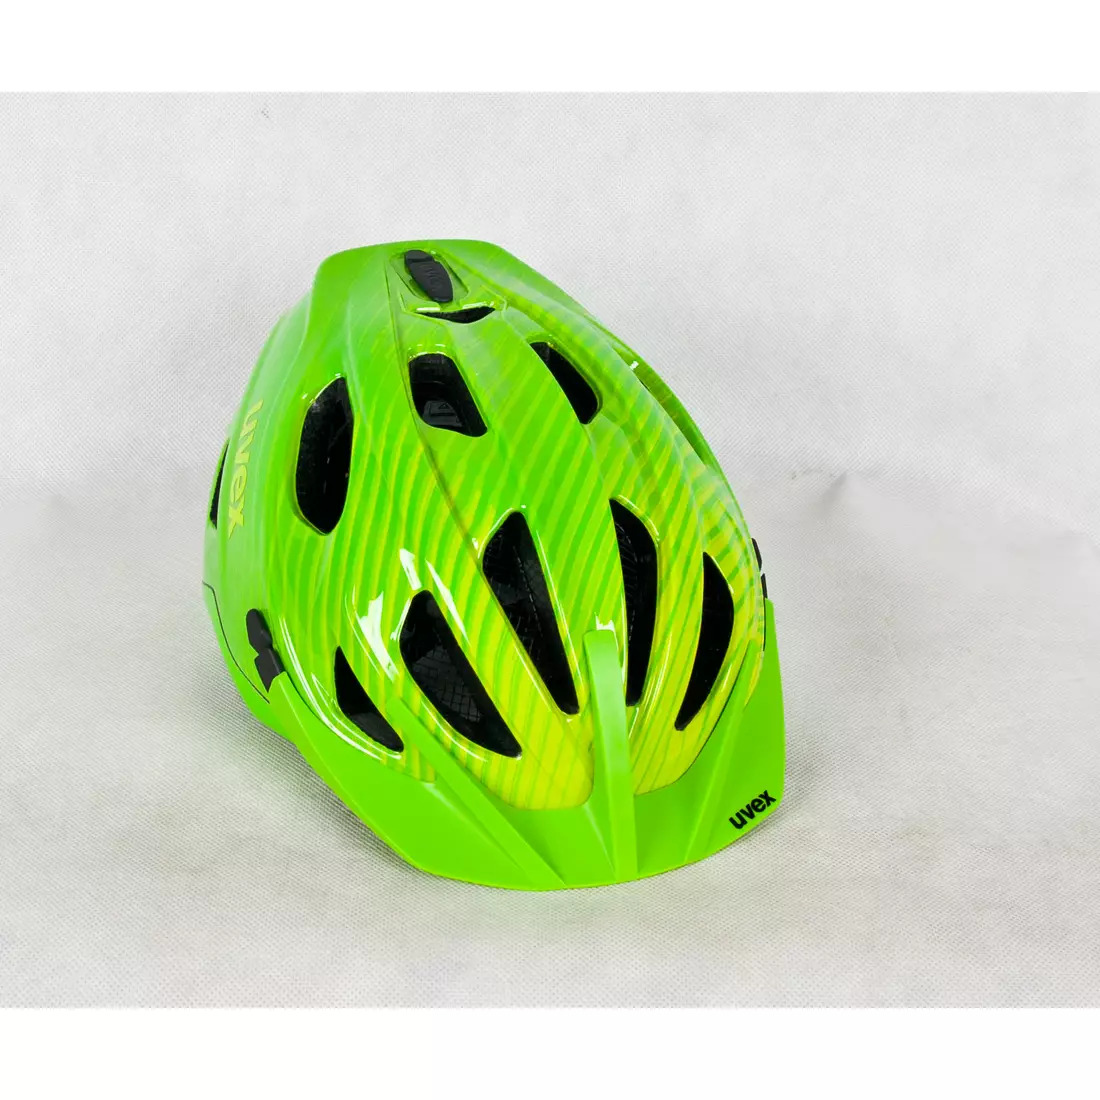 UVEX ADIGE kerékpáros sisak zöld és citrom